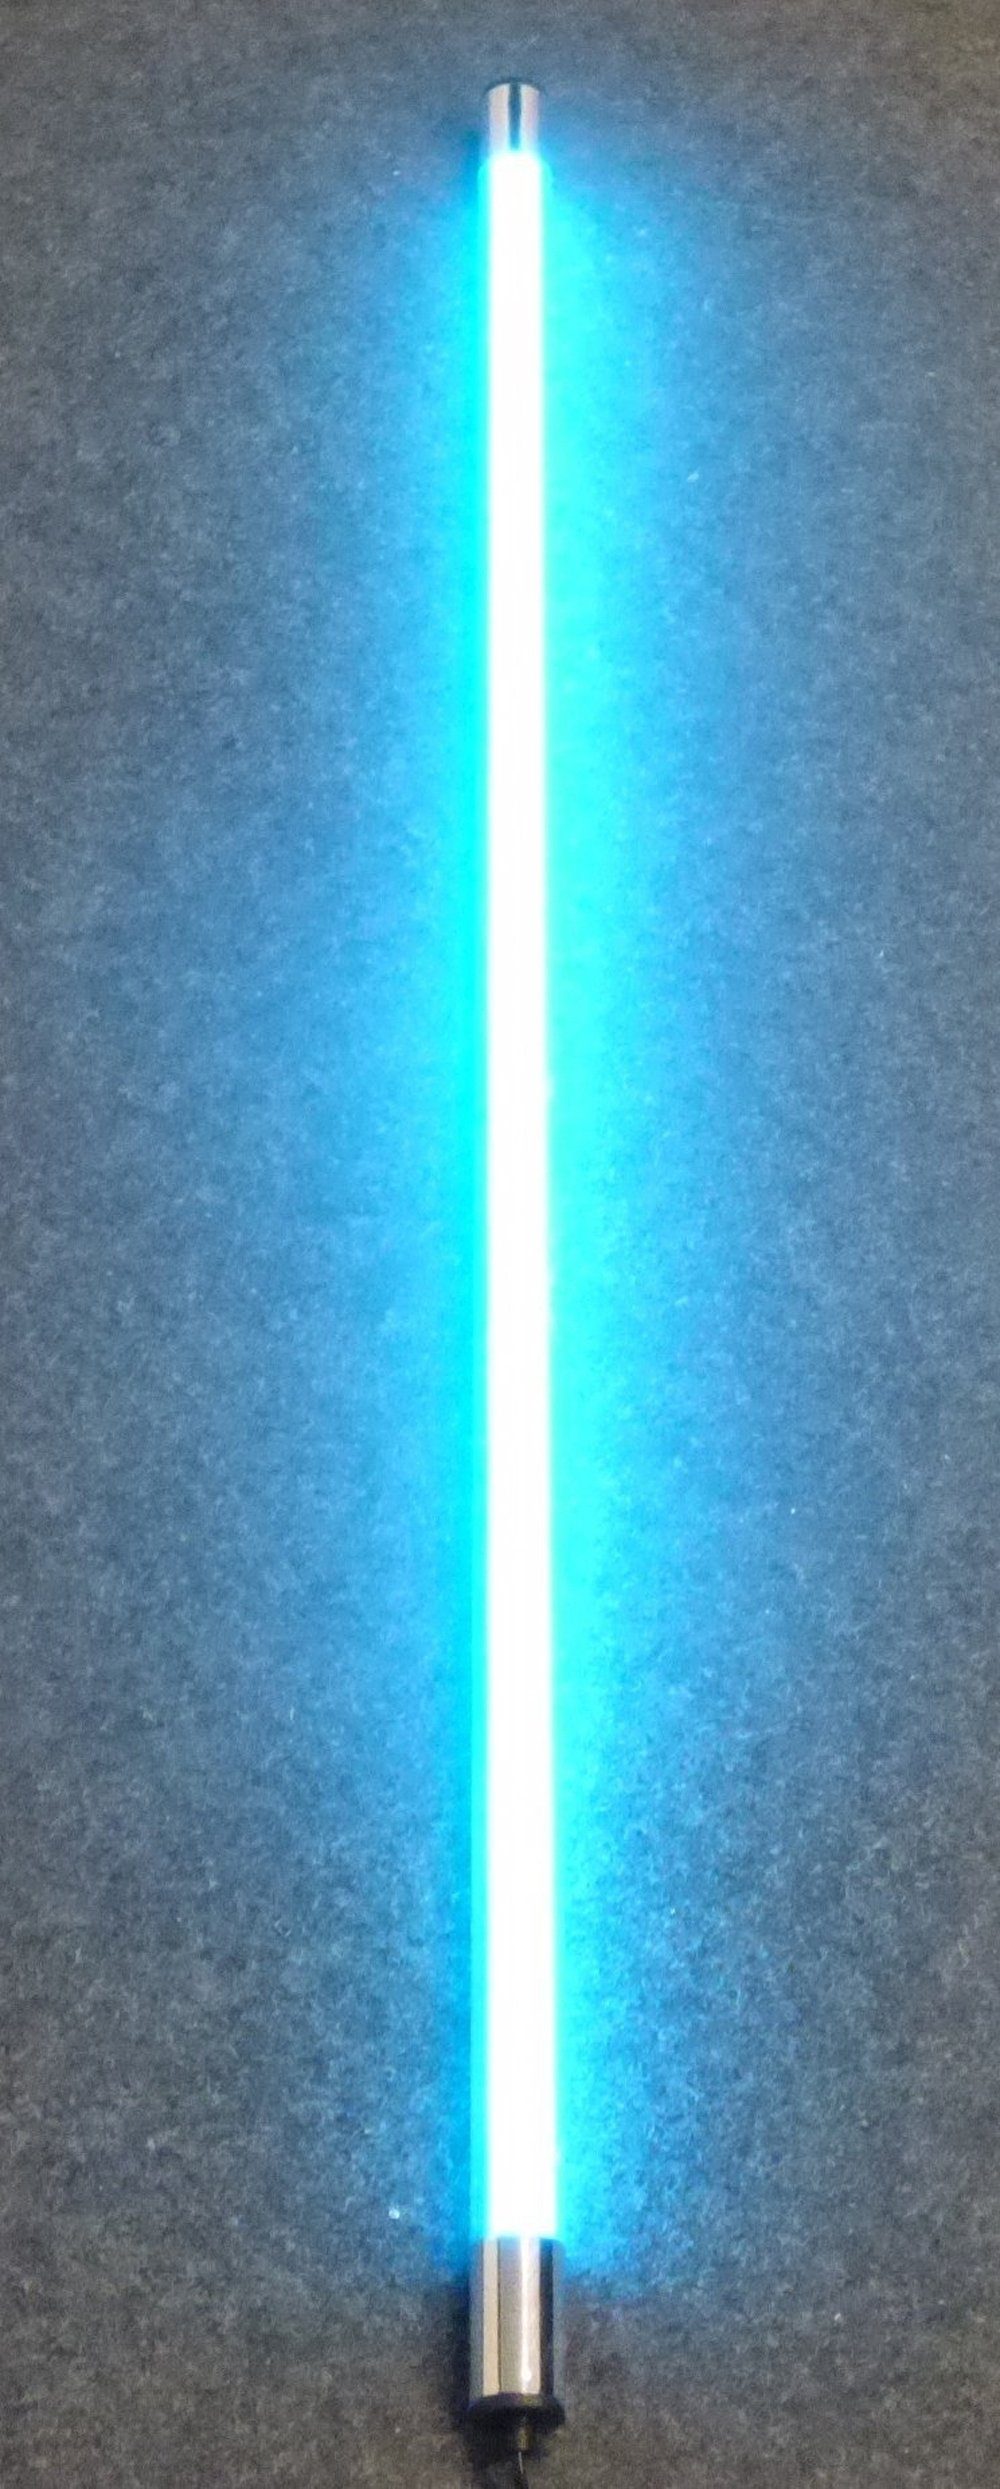 XENON LED Außen-Wandleuchte LED Gabionen Röhr m. Kunststoff-Röhre 123cm Blau, LED Röhre T8, Xenon